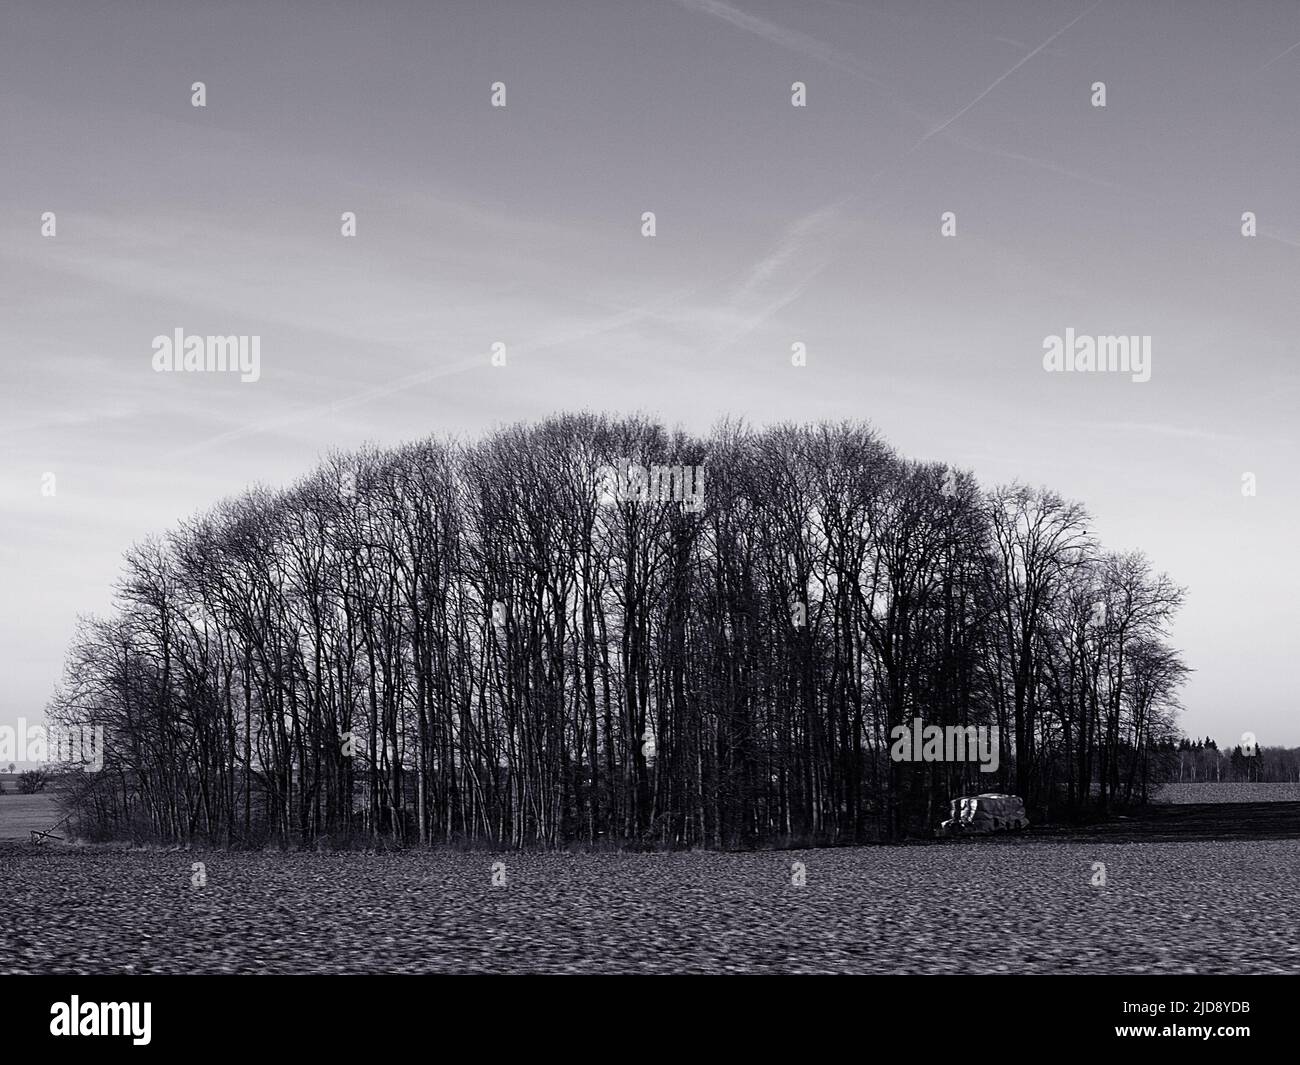 Gruppo di alberi nella stagione invernale girato in bianco e nero Foto Stock